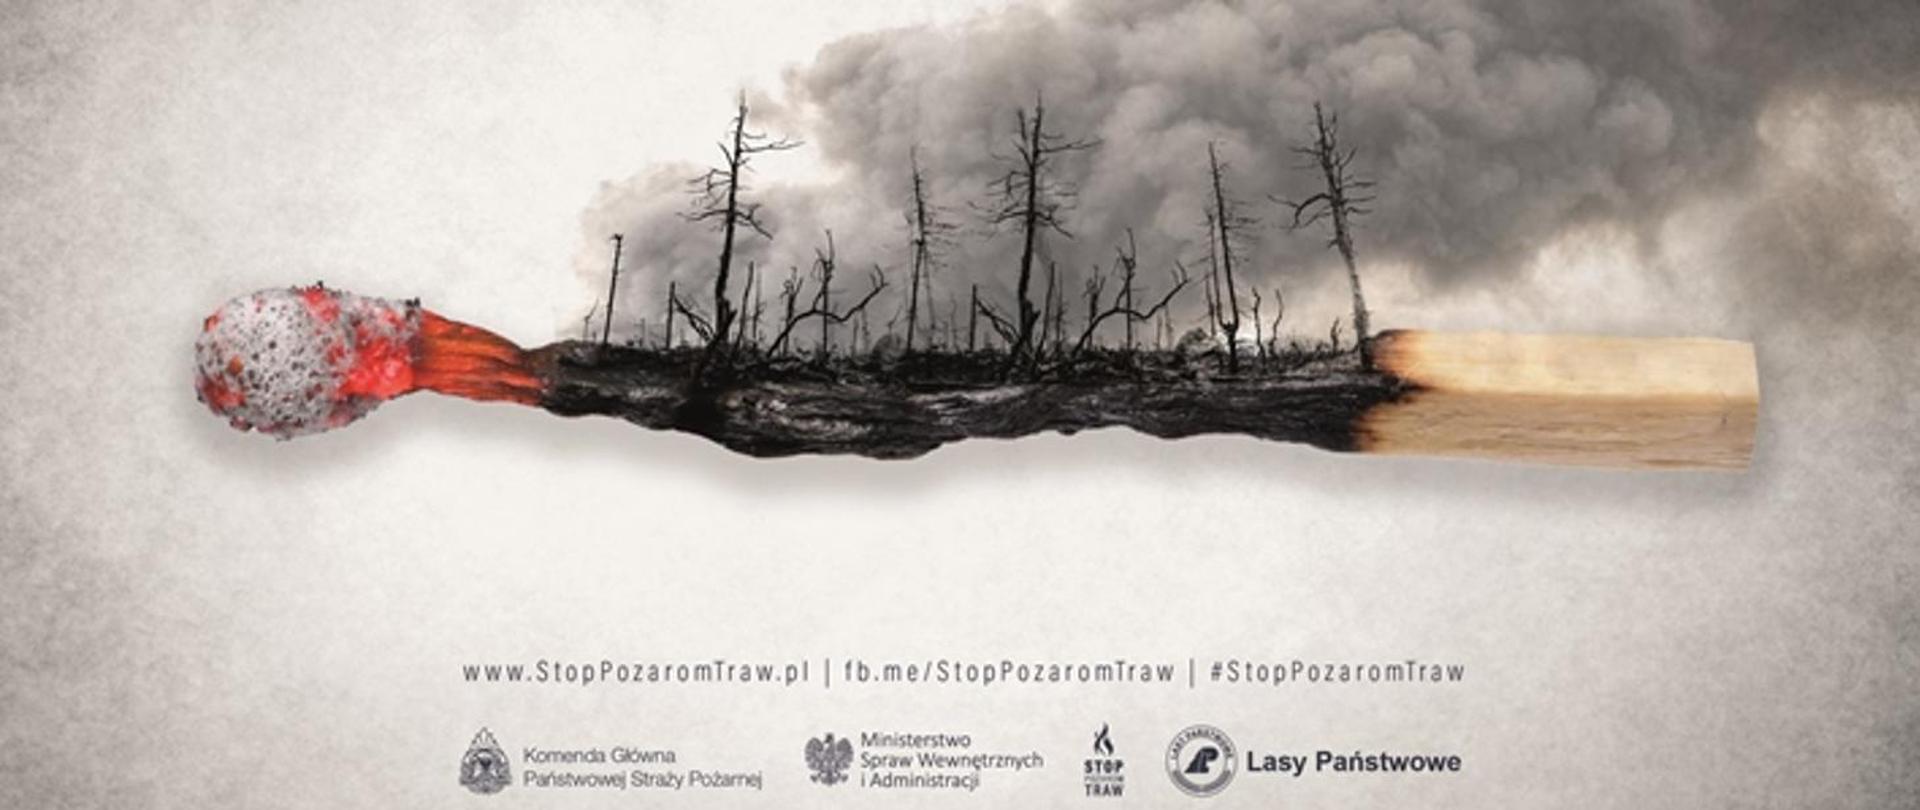 Grafika prezentująca spalony las na podwalinach spalonej zapałki